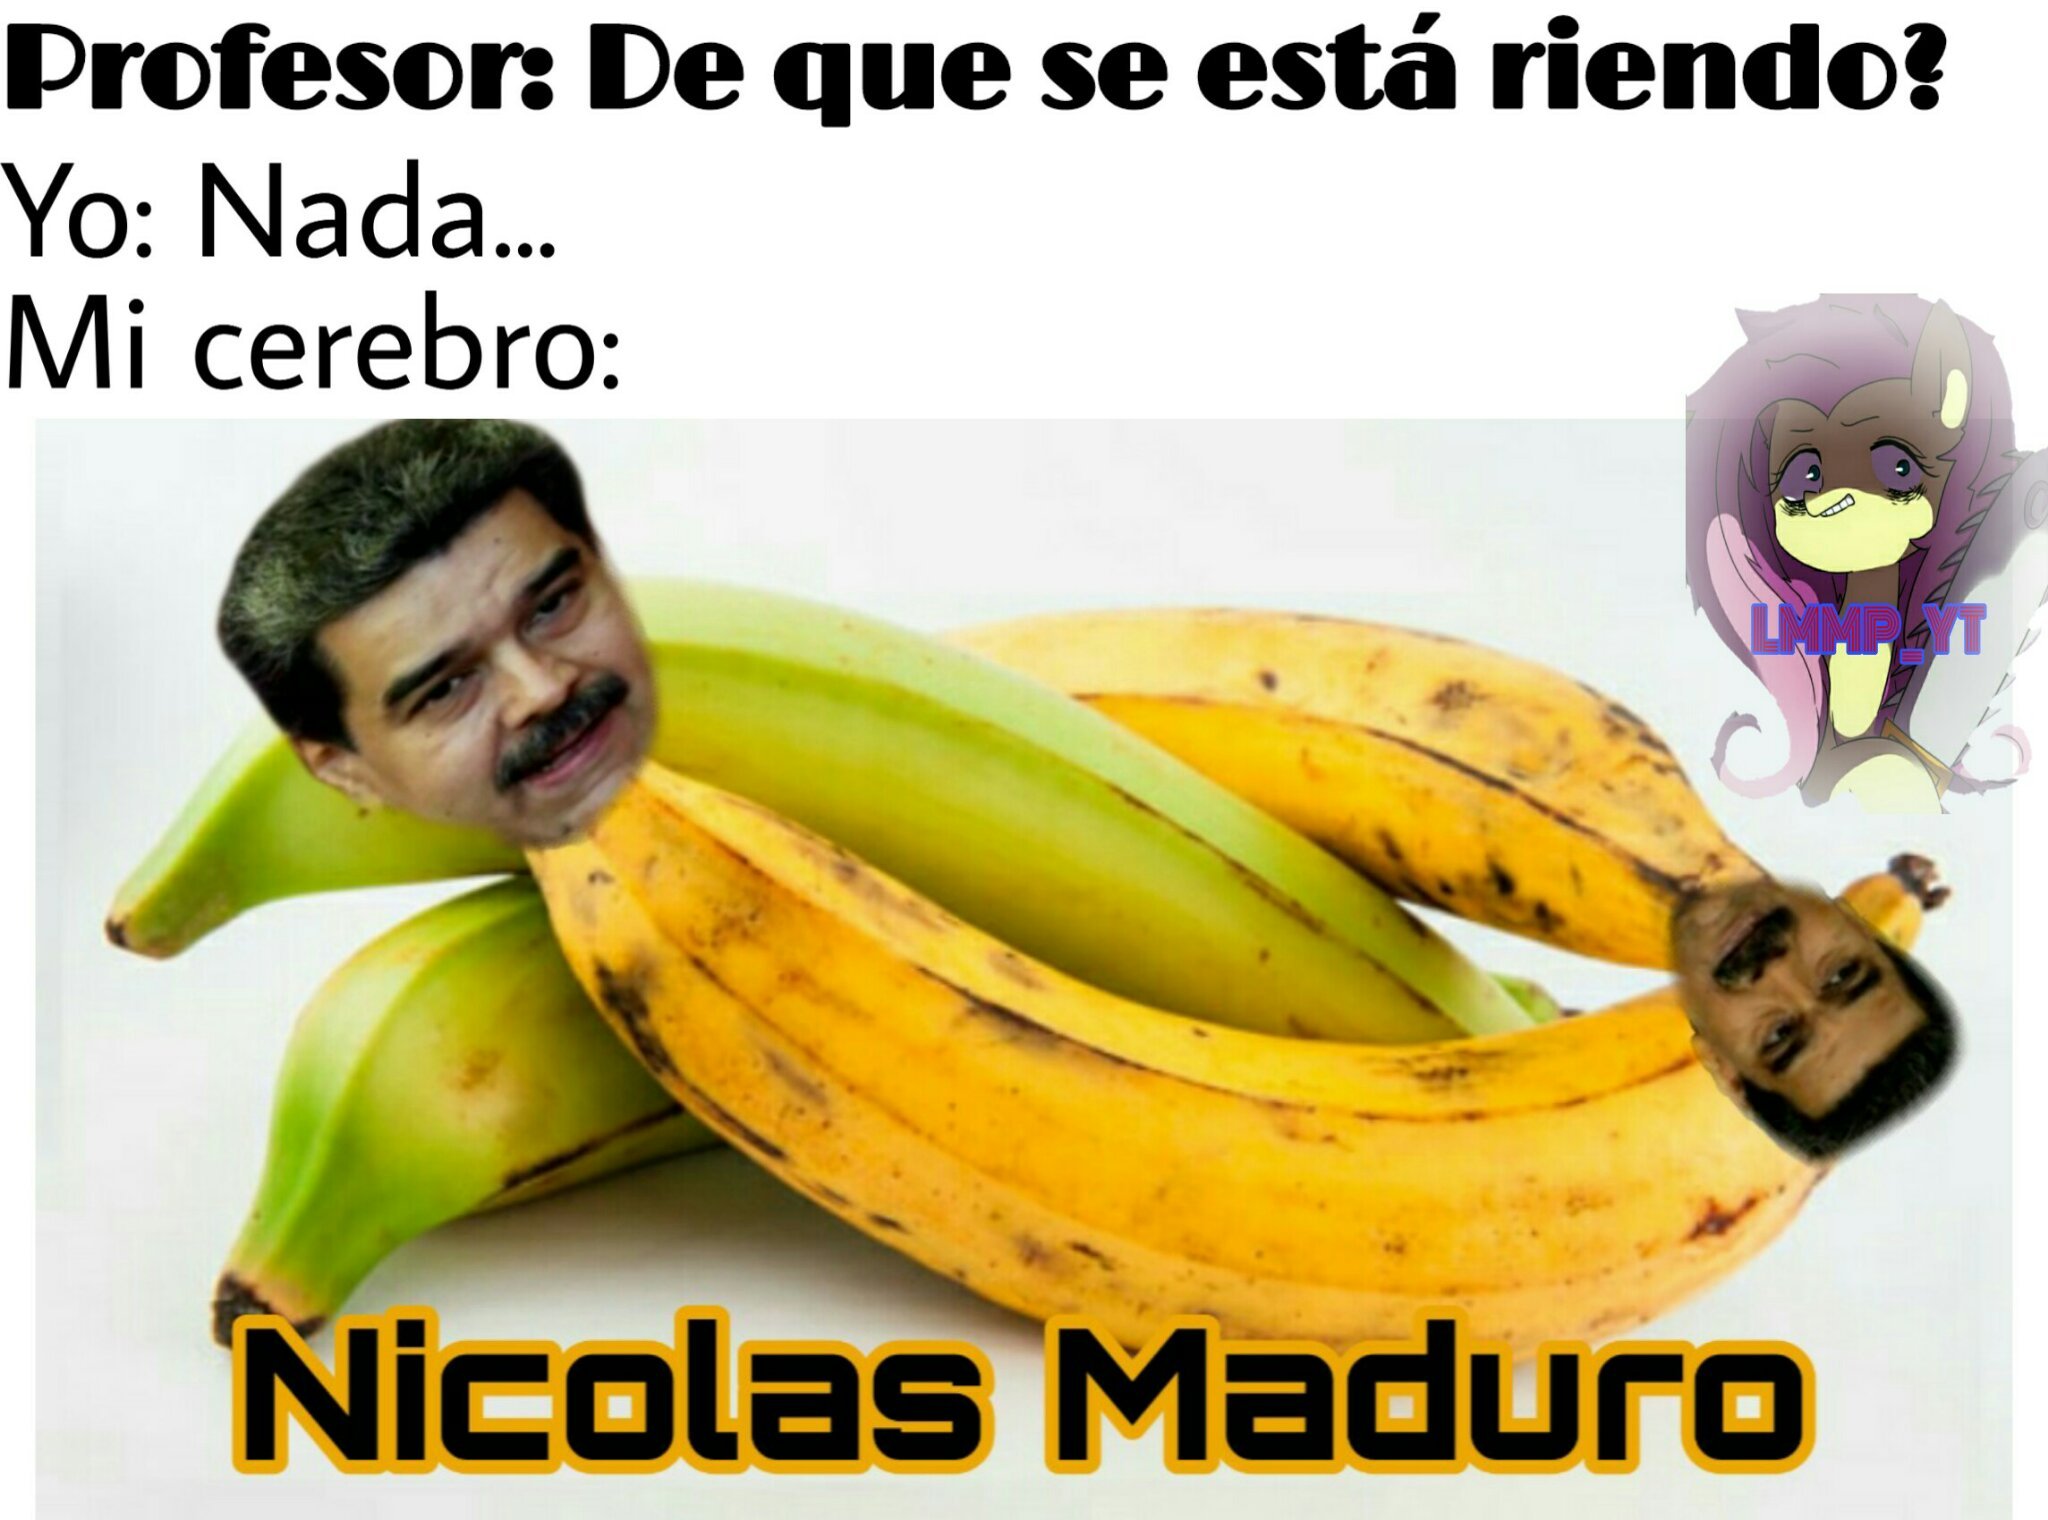 Pinshi Maduro, los pobres venezolanos seguro ni les queda tiempo para ver memes